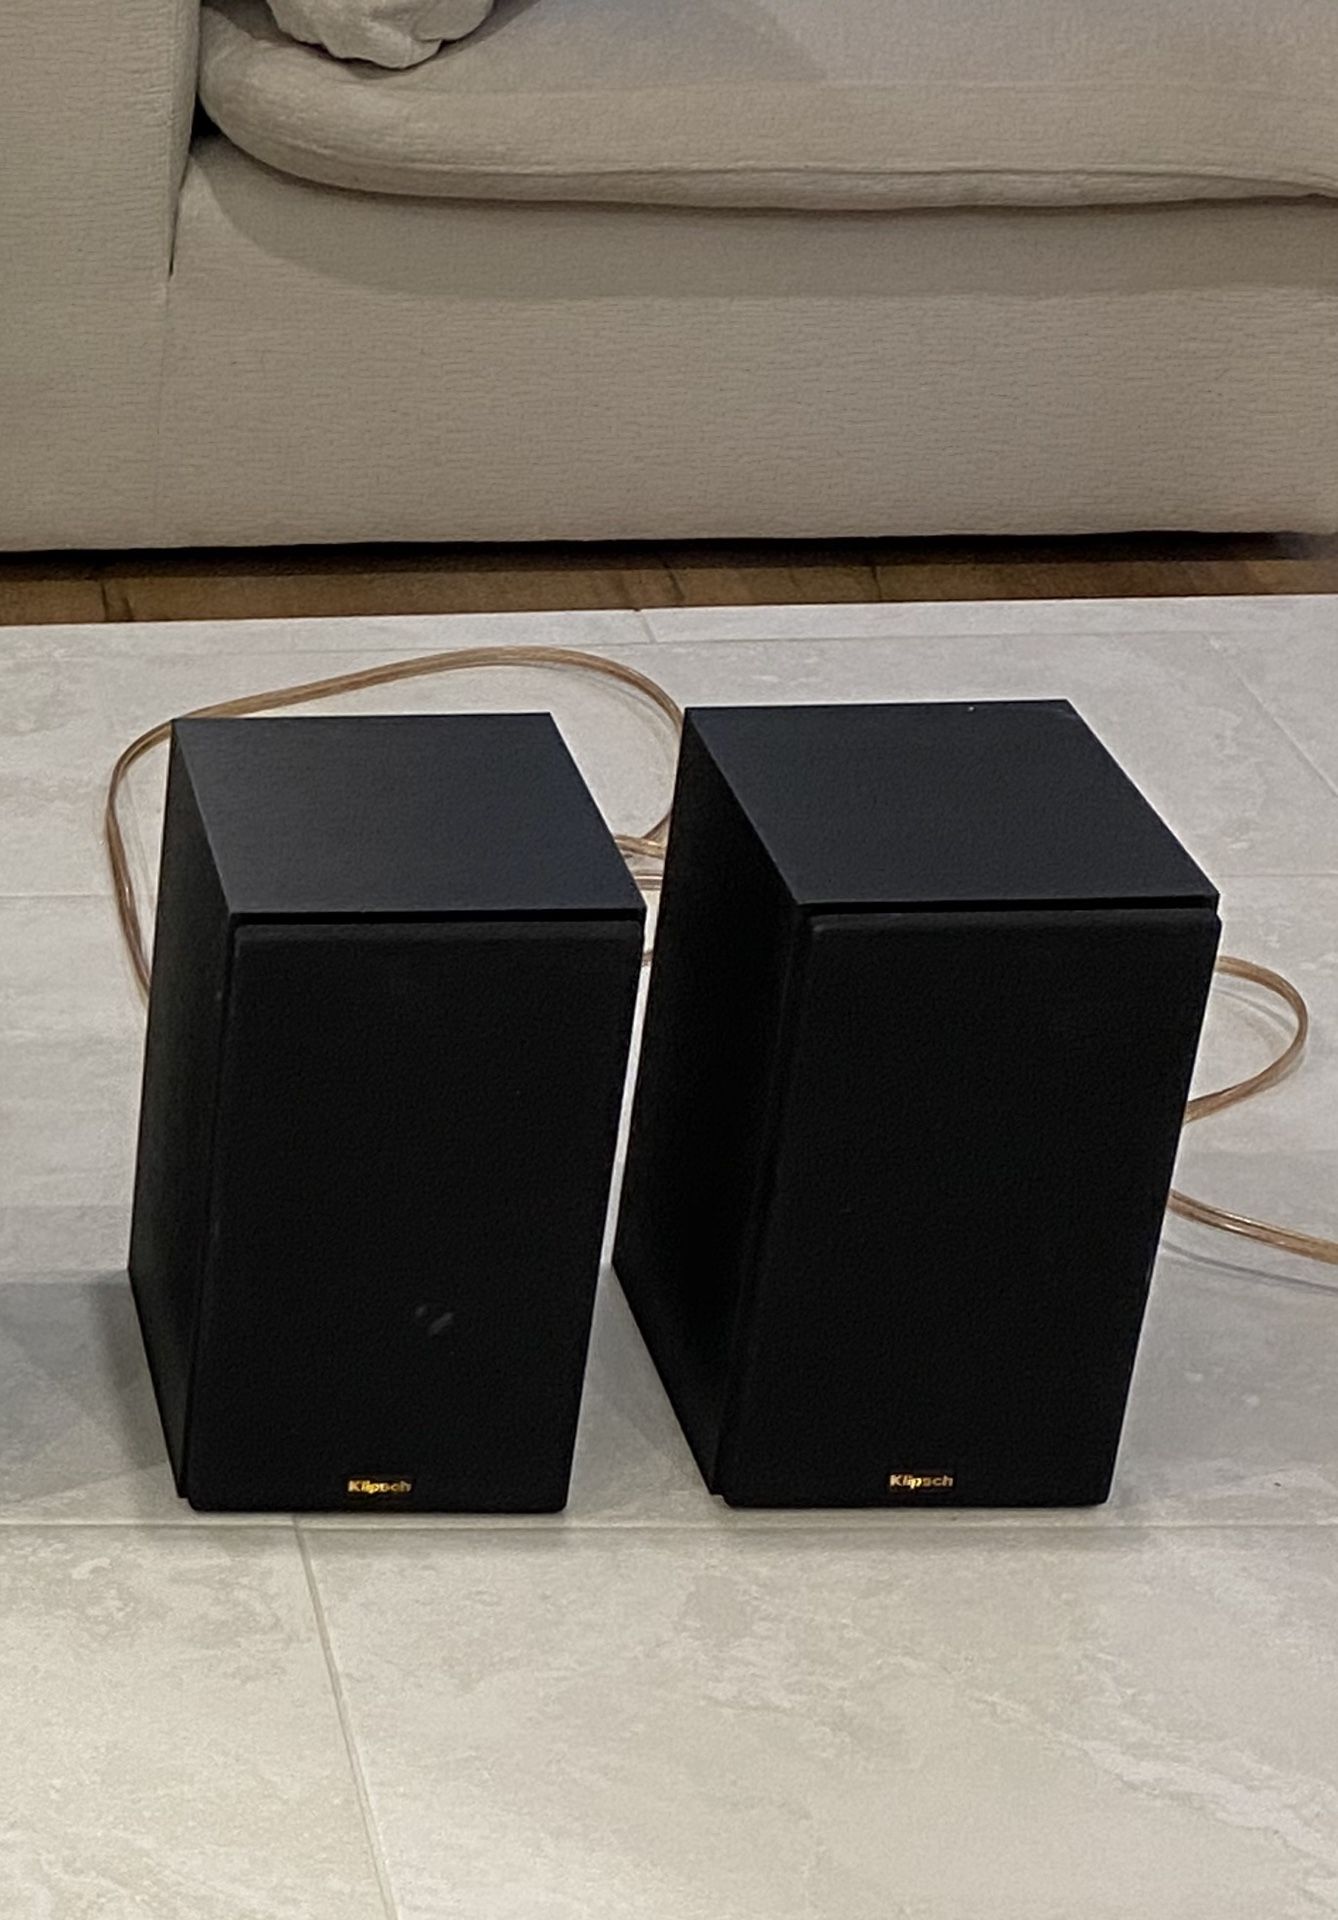 Klipsch R-14m (2 speakers)